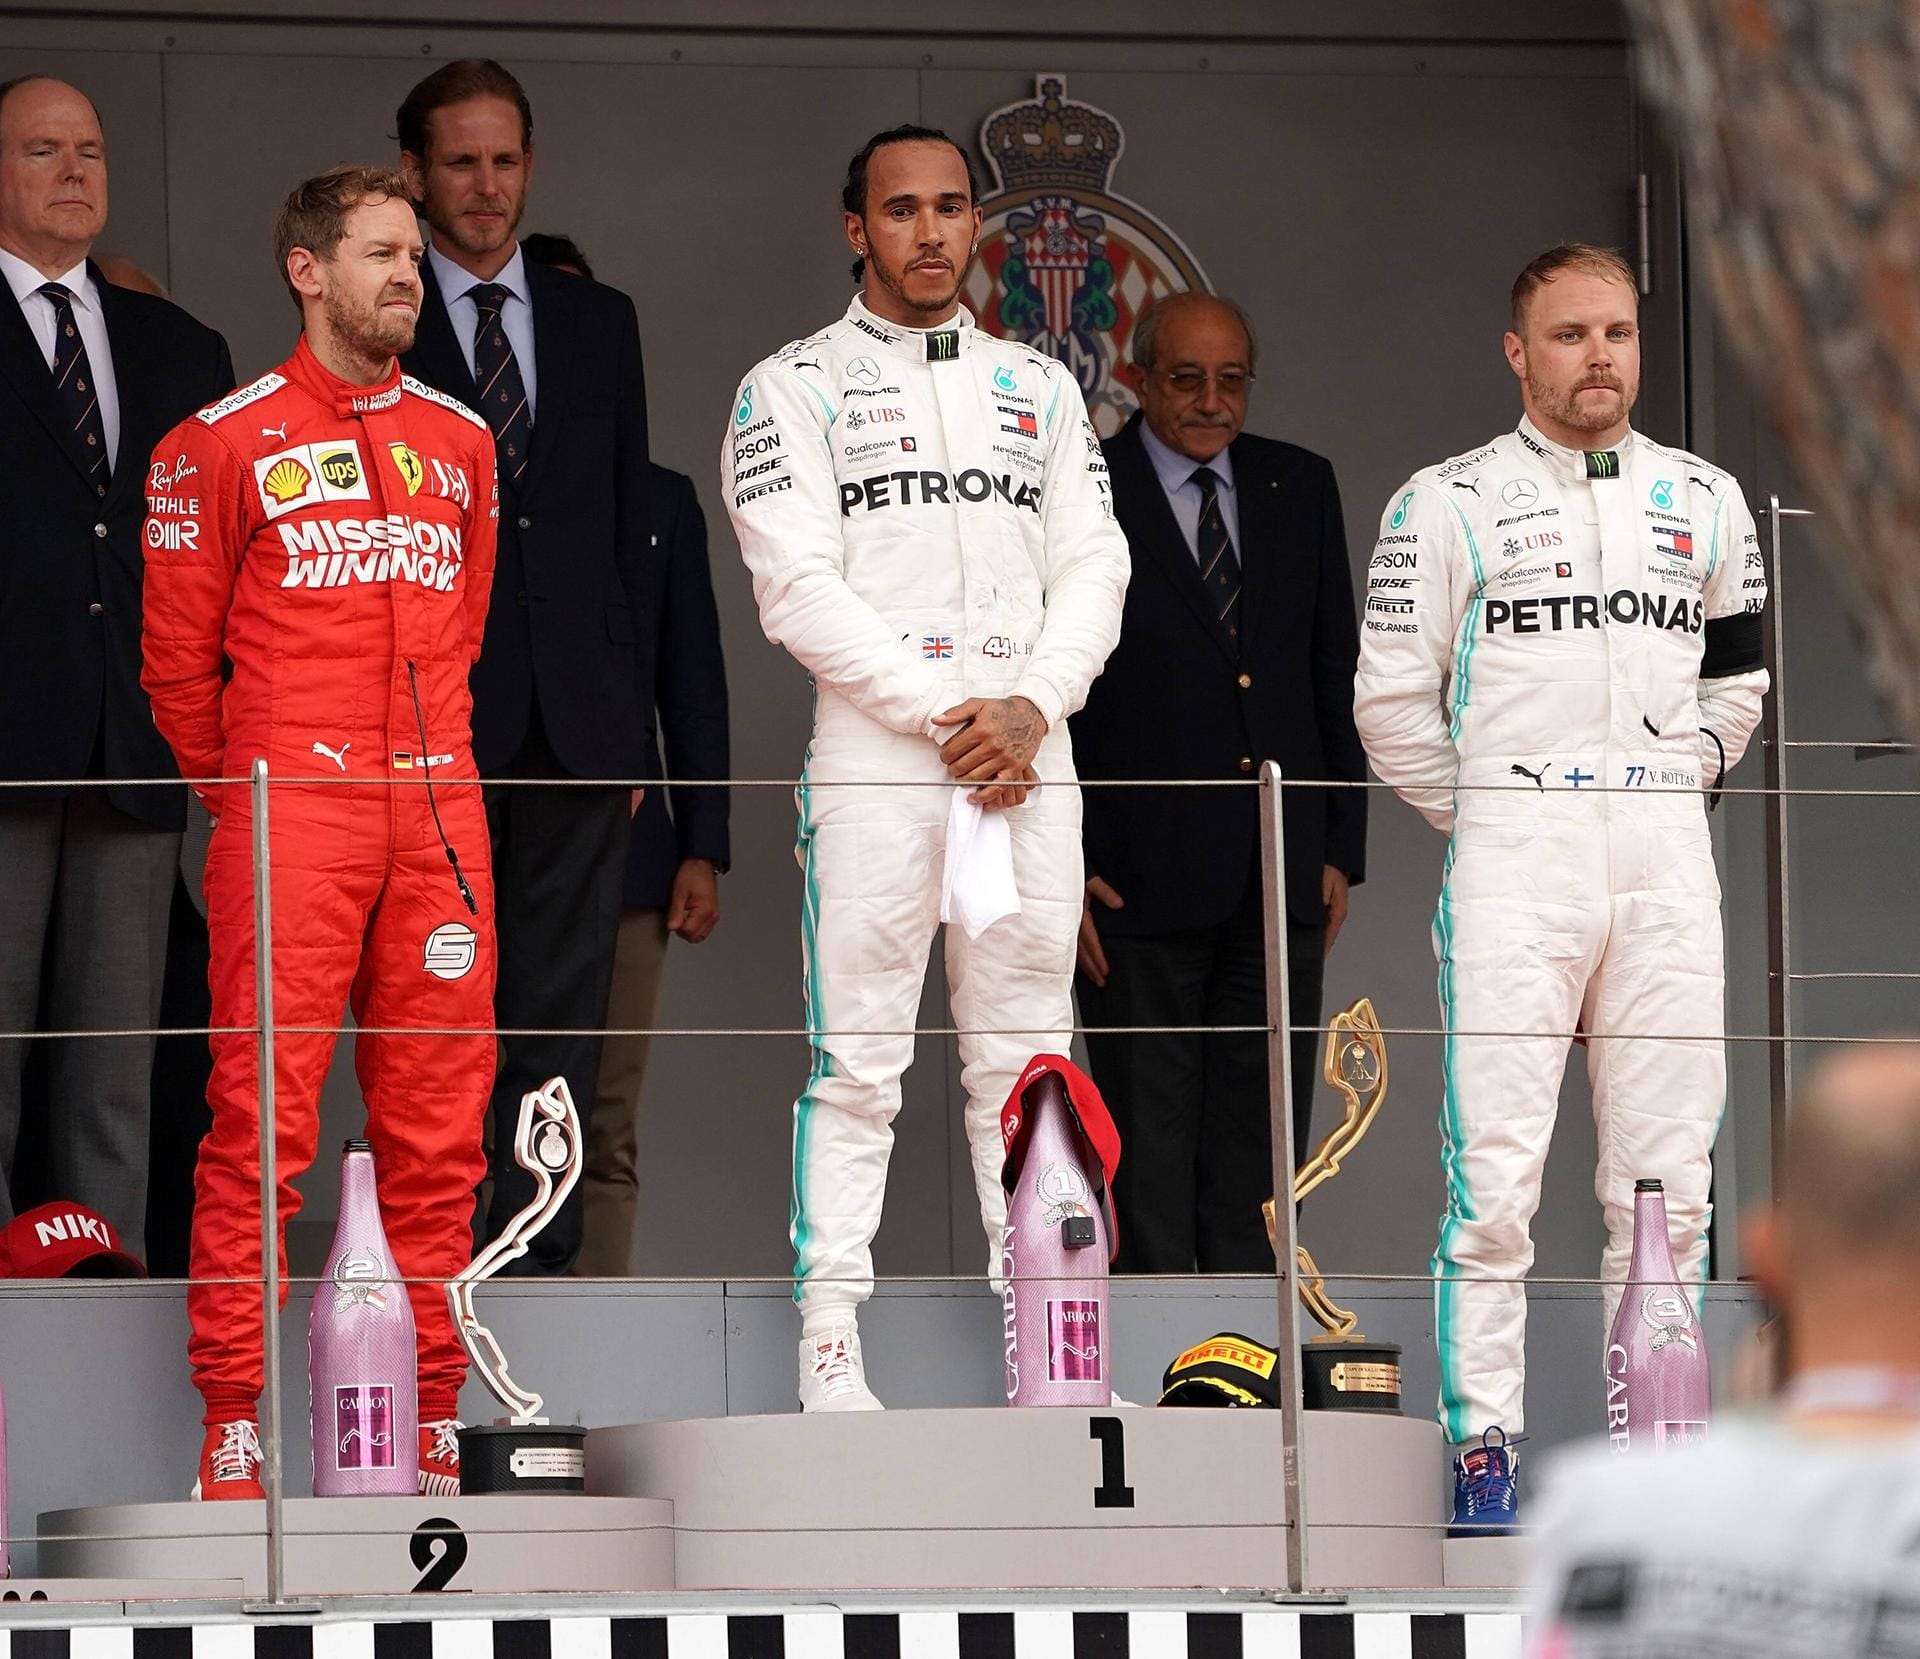 Großer Preis von Monaco: Endlich das ersehnte Erfolgserlebnis! Auf dem legendären Stadtkurs im Fürstentum fährt Vettel auf Platz zwei hinter Hamilton, verhindert so auch den sechsten Mercedes-Doppelsieg in Folge.